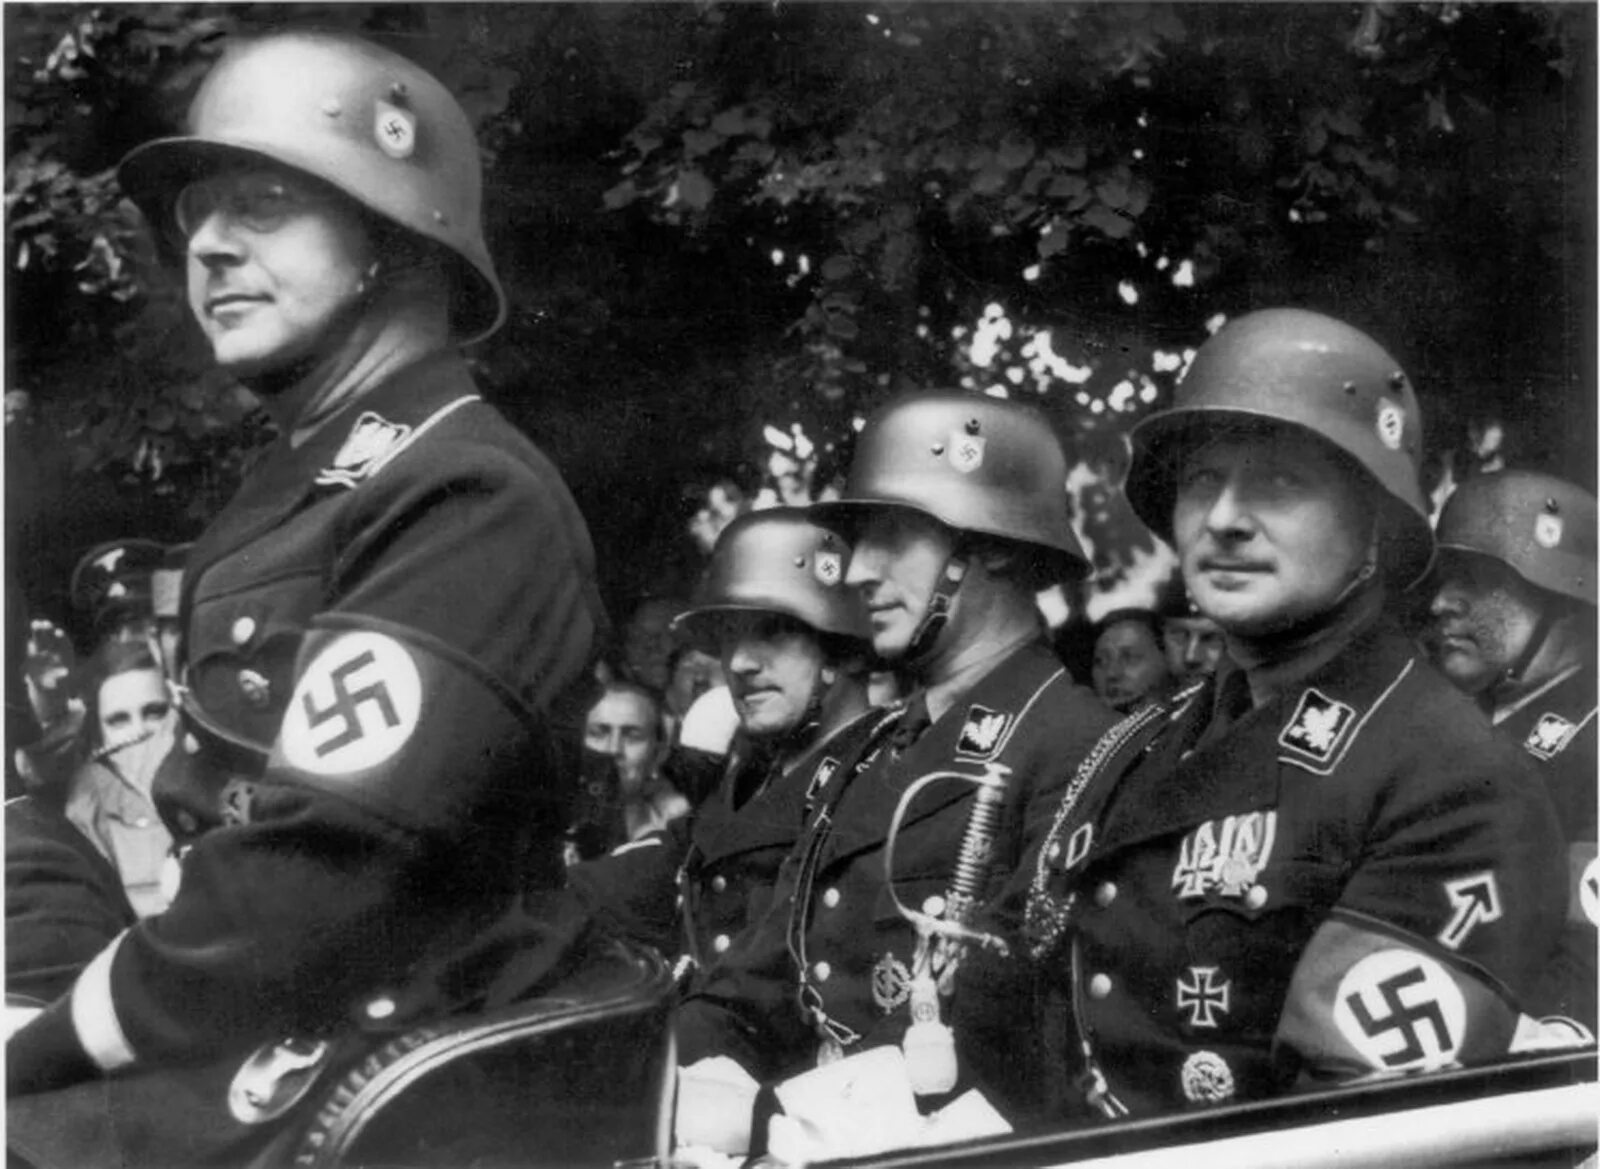 Ц сс. Солдаты СС третьего рейха. СС 3 Рейх. Гиммлер в каске.